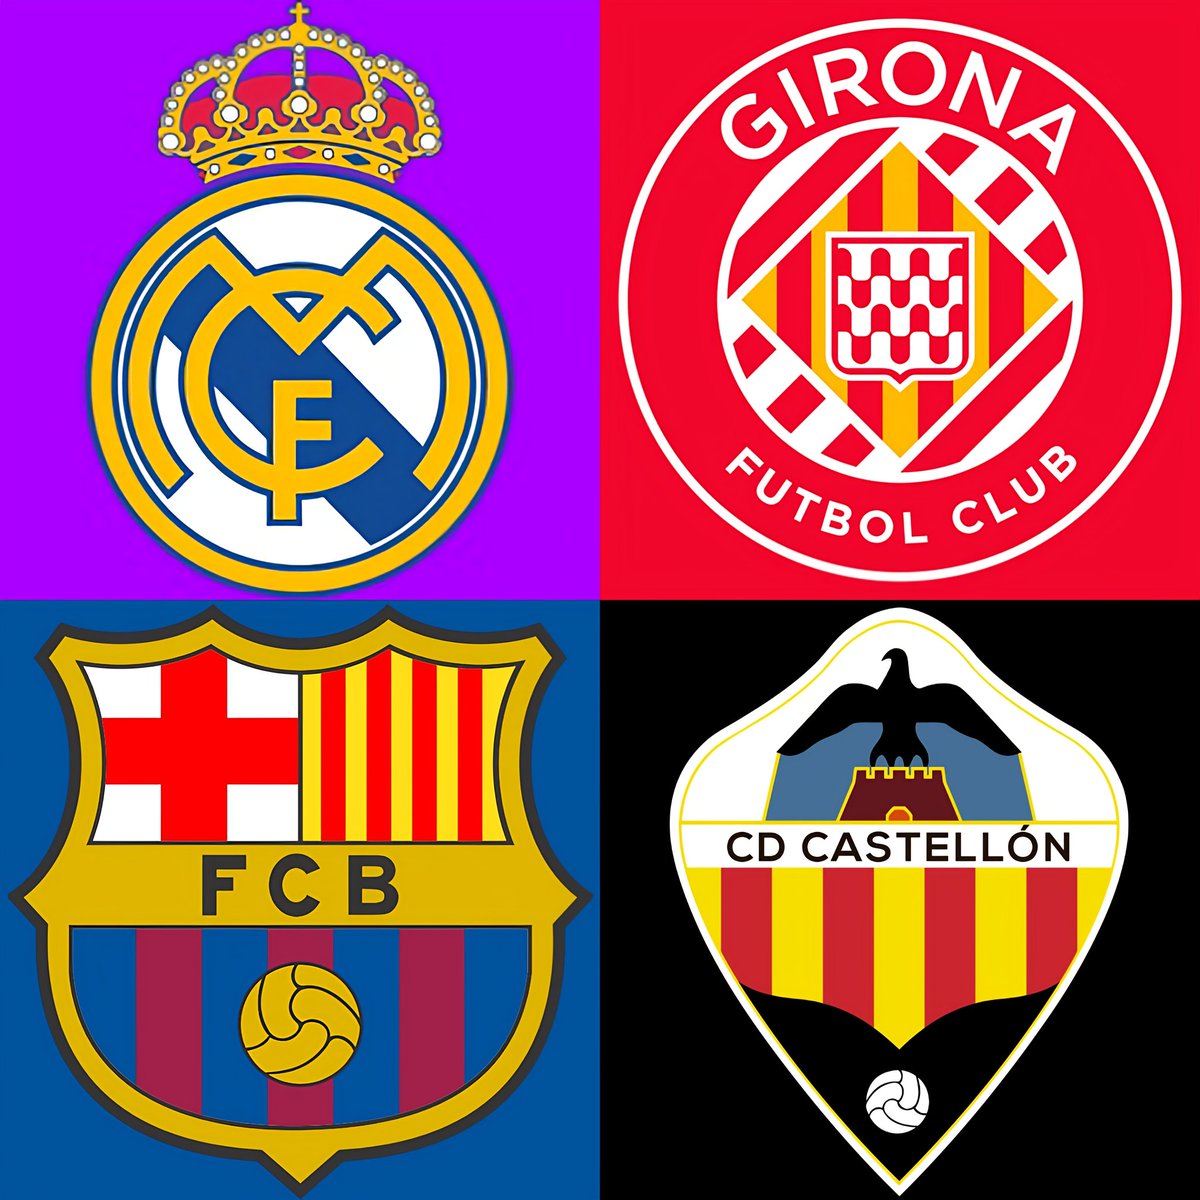 Con todos ustedes, los cuatro equipos más goleadores de las cuatro principales categorías del fútbol español:

- Real Madrid (87).

- Girona FC (85).

- FC Barcelona (79).

- CD CASTELLÓN (74).